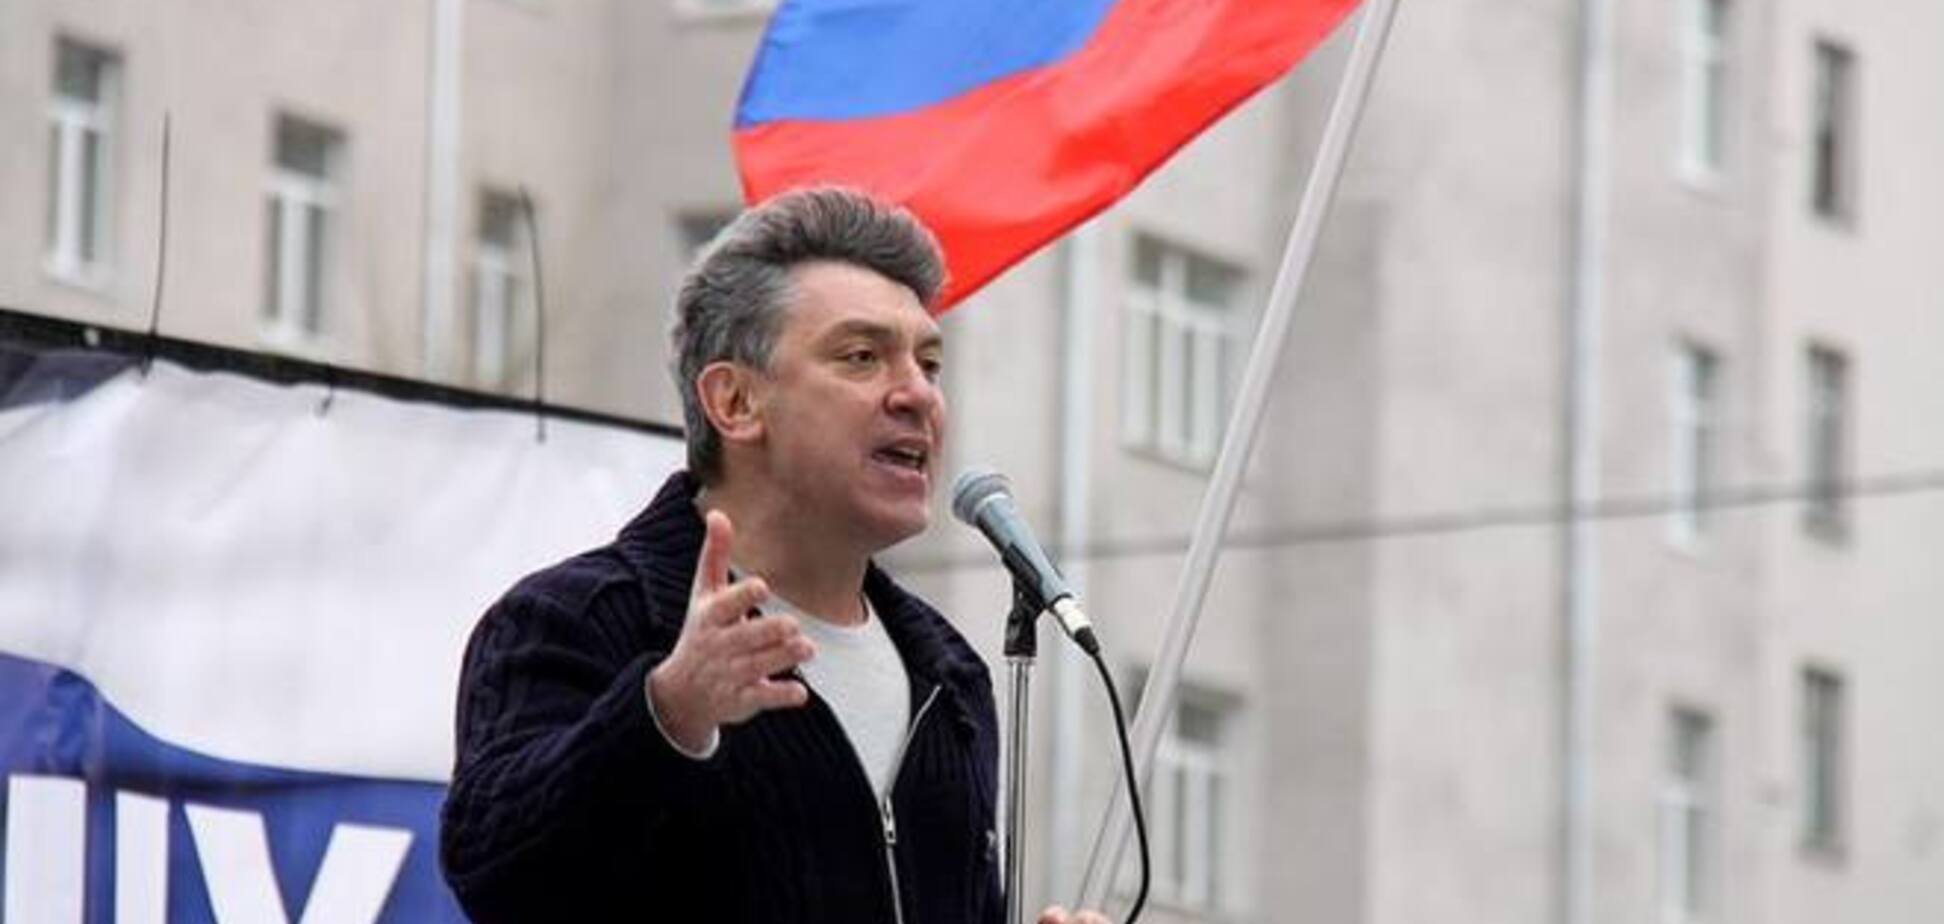 Цена на газ для Украины должна быть около $300. До осени все будет решено – Немцов